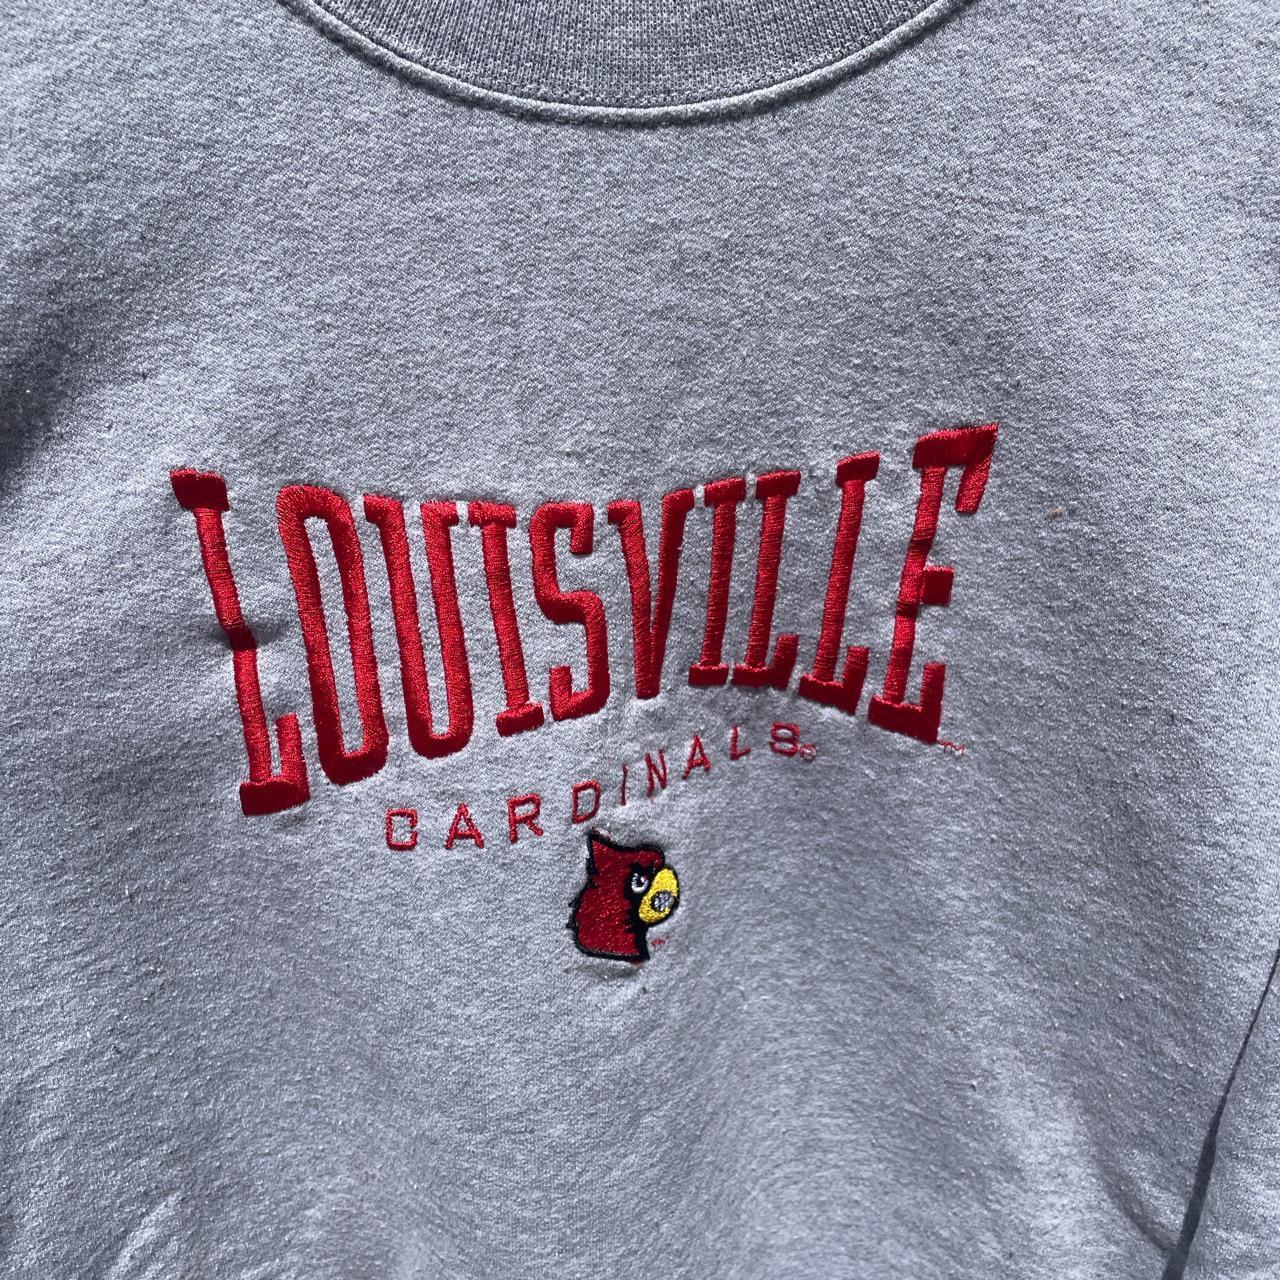 Represent the boys. Louisville Cardinals baseball. - Depop